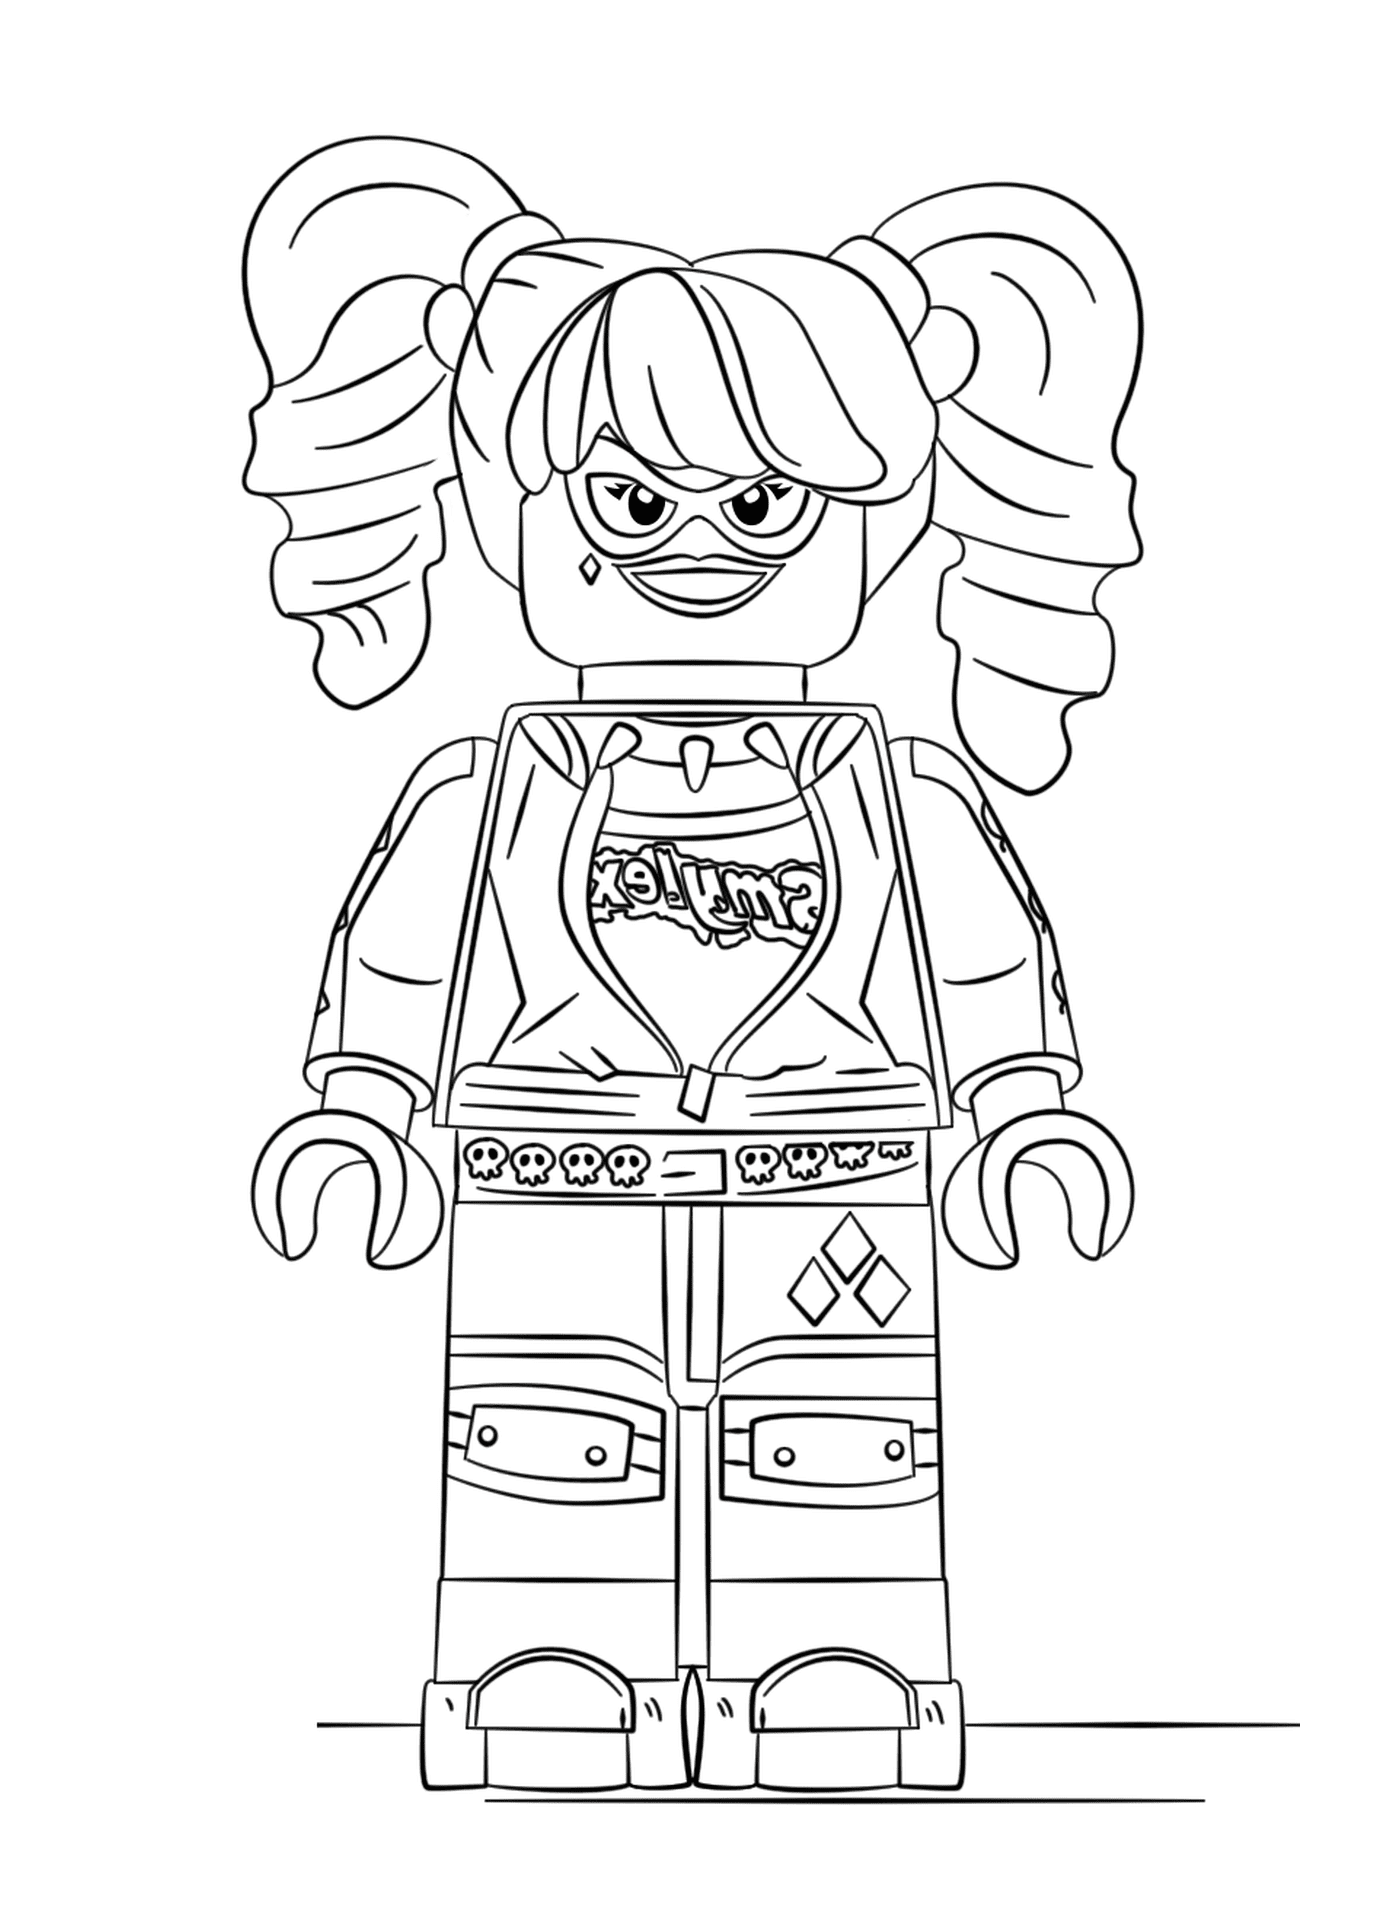  Lego ragazza con un sorriso sul suo viso 